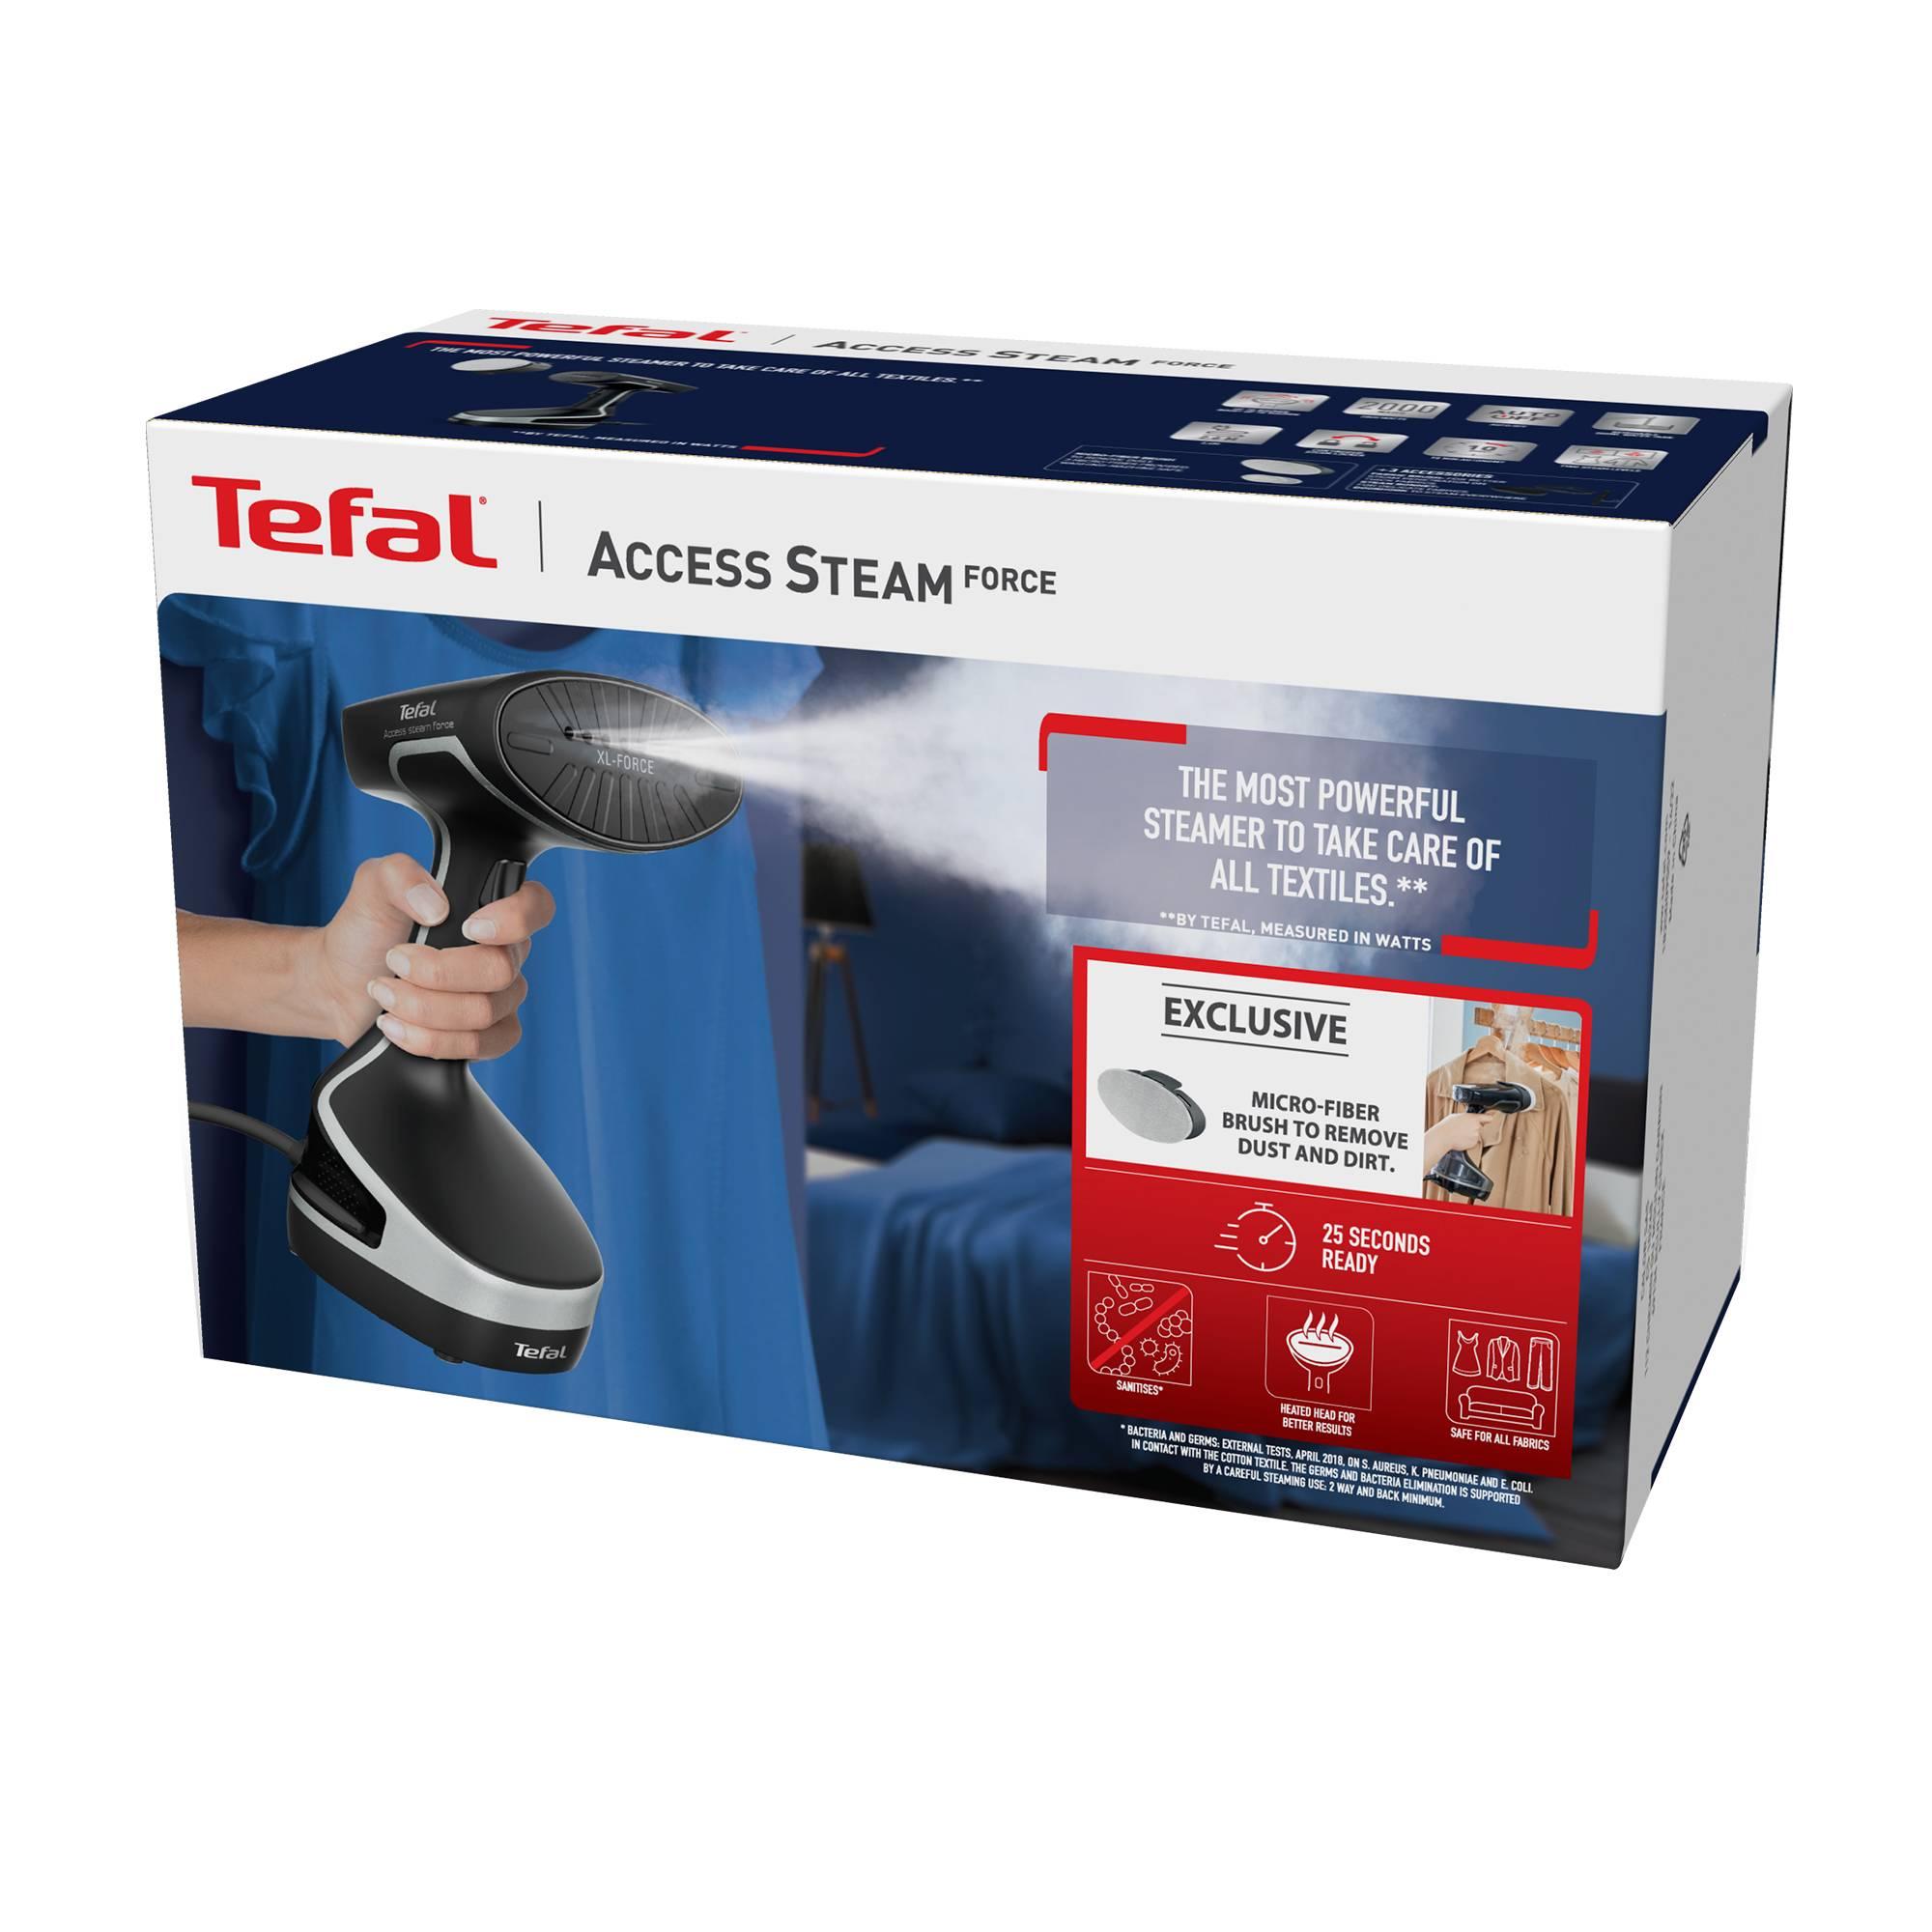 Tefal Access Steam Force DT8280 Handheld Garment Steamer Black Image 6